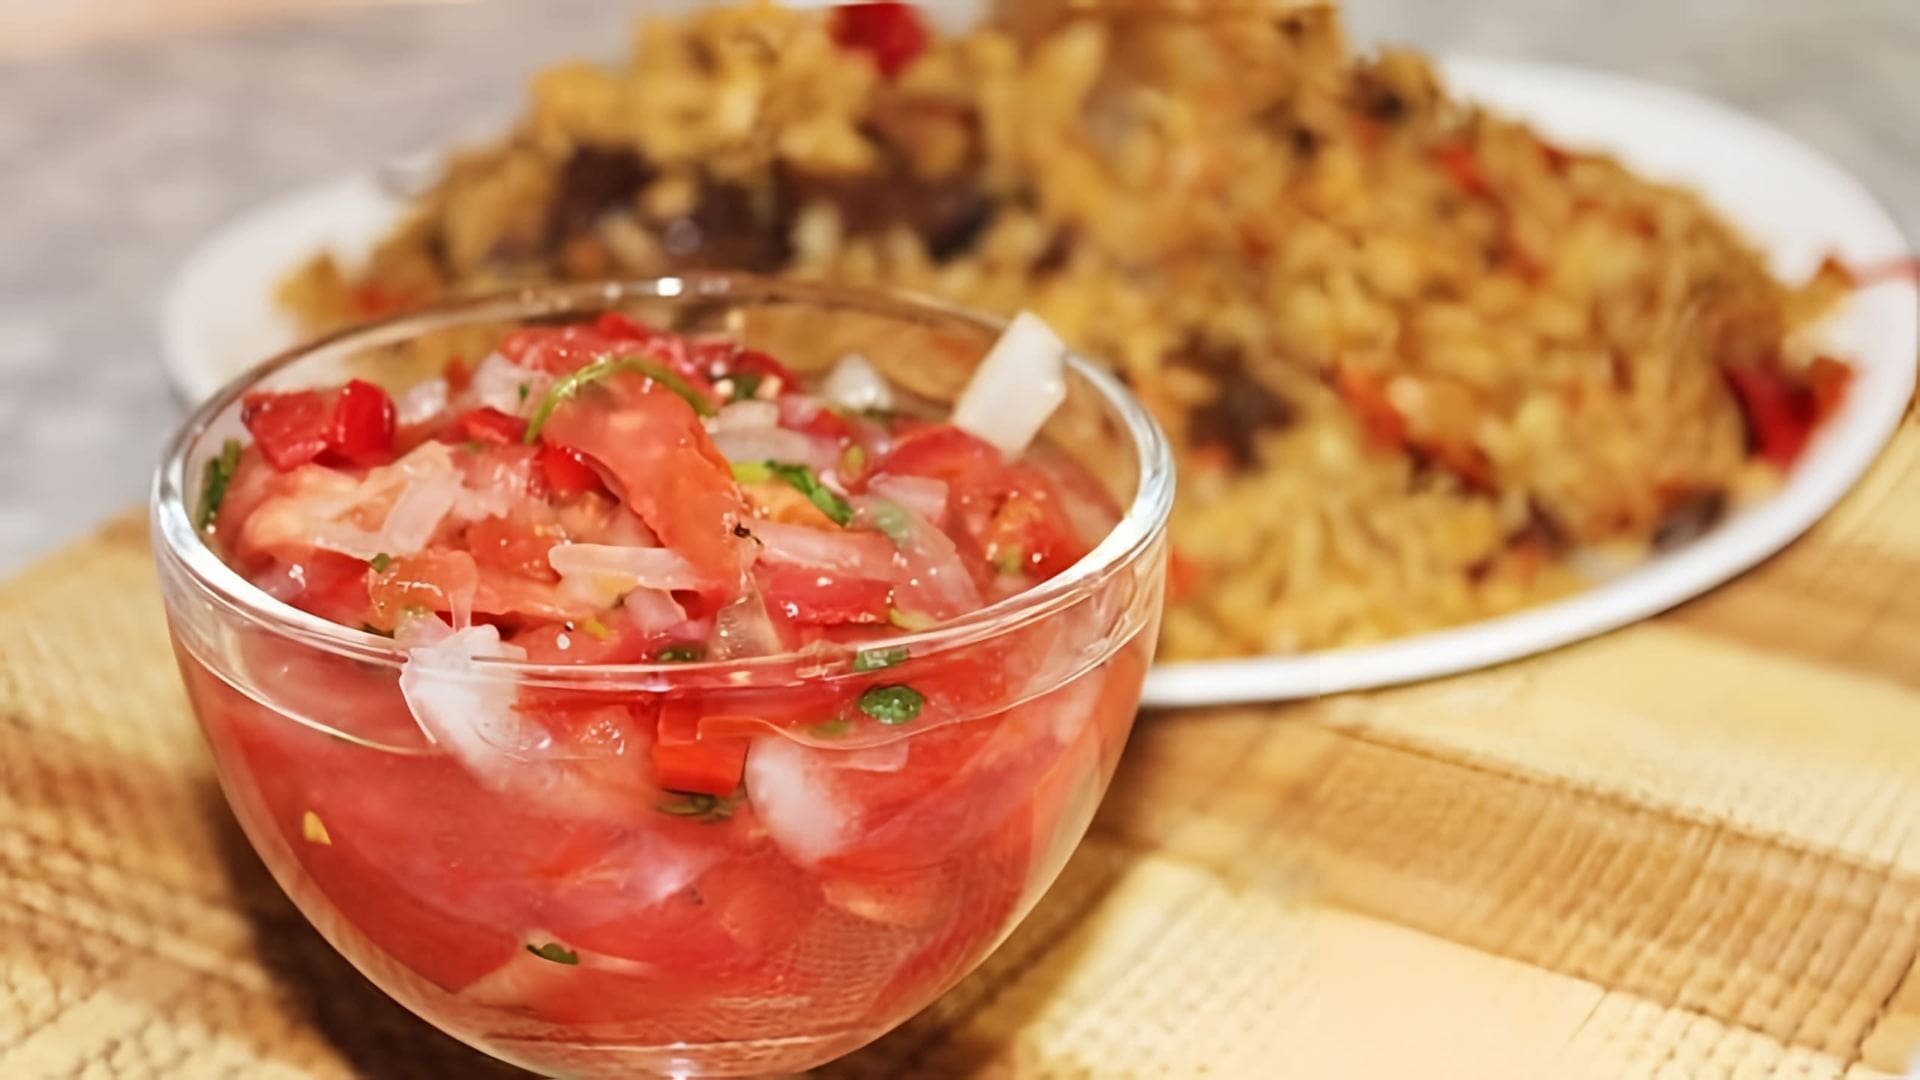 В этом видео демонстрируется процесс приготовления узбекского салата "Ачичук" из помидоров